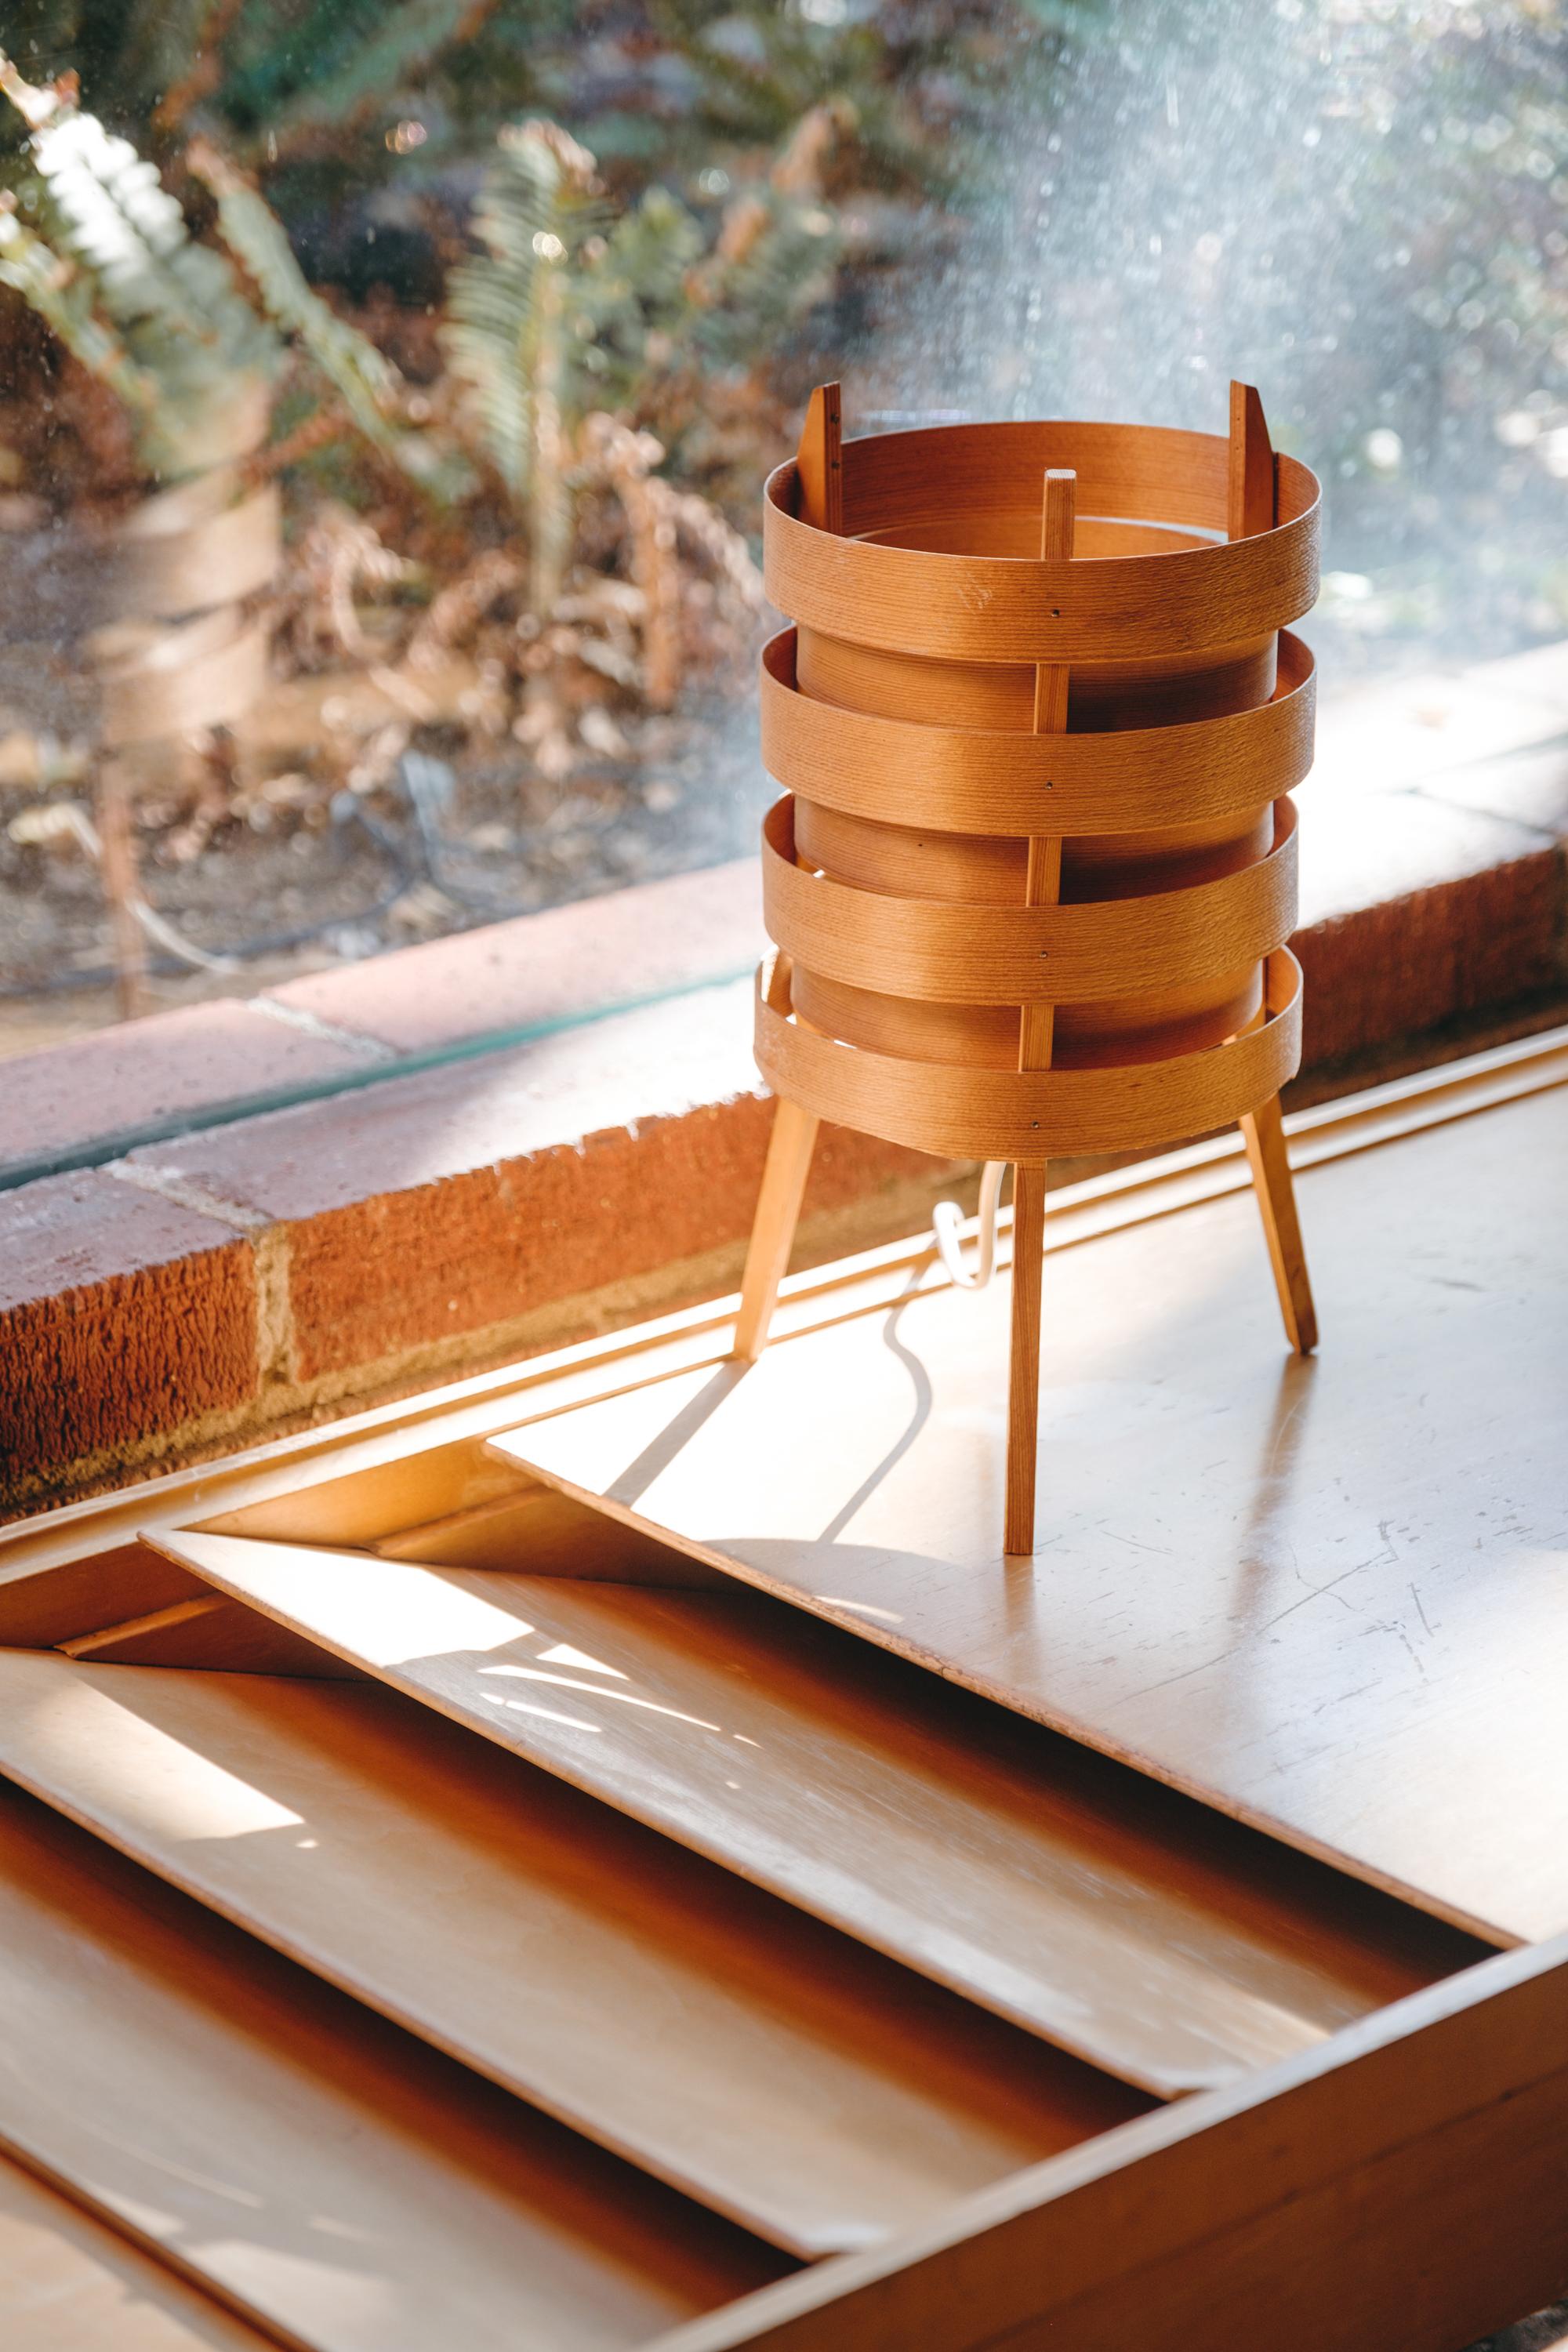 1960er Hans-Agne Jakobsson Dreibein-Tischlampe aus Holz für AB Ellysett. Entworfen und hergestellt von Jakobsson in Markaryd, Schweden, aus dünnem Bugholz mit massivem Dreibeinfuß. Eine seltene und skulpturale Lampe, die von Sammlern weltweit immer